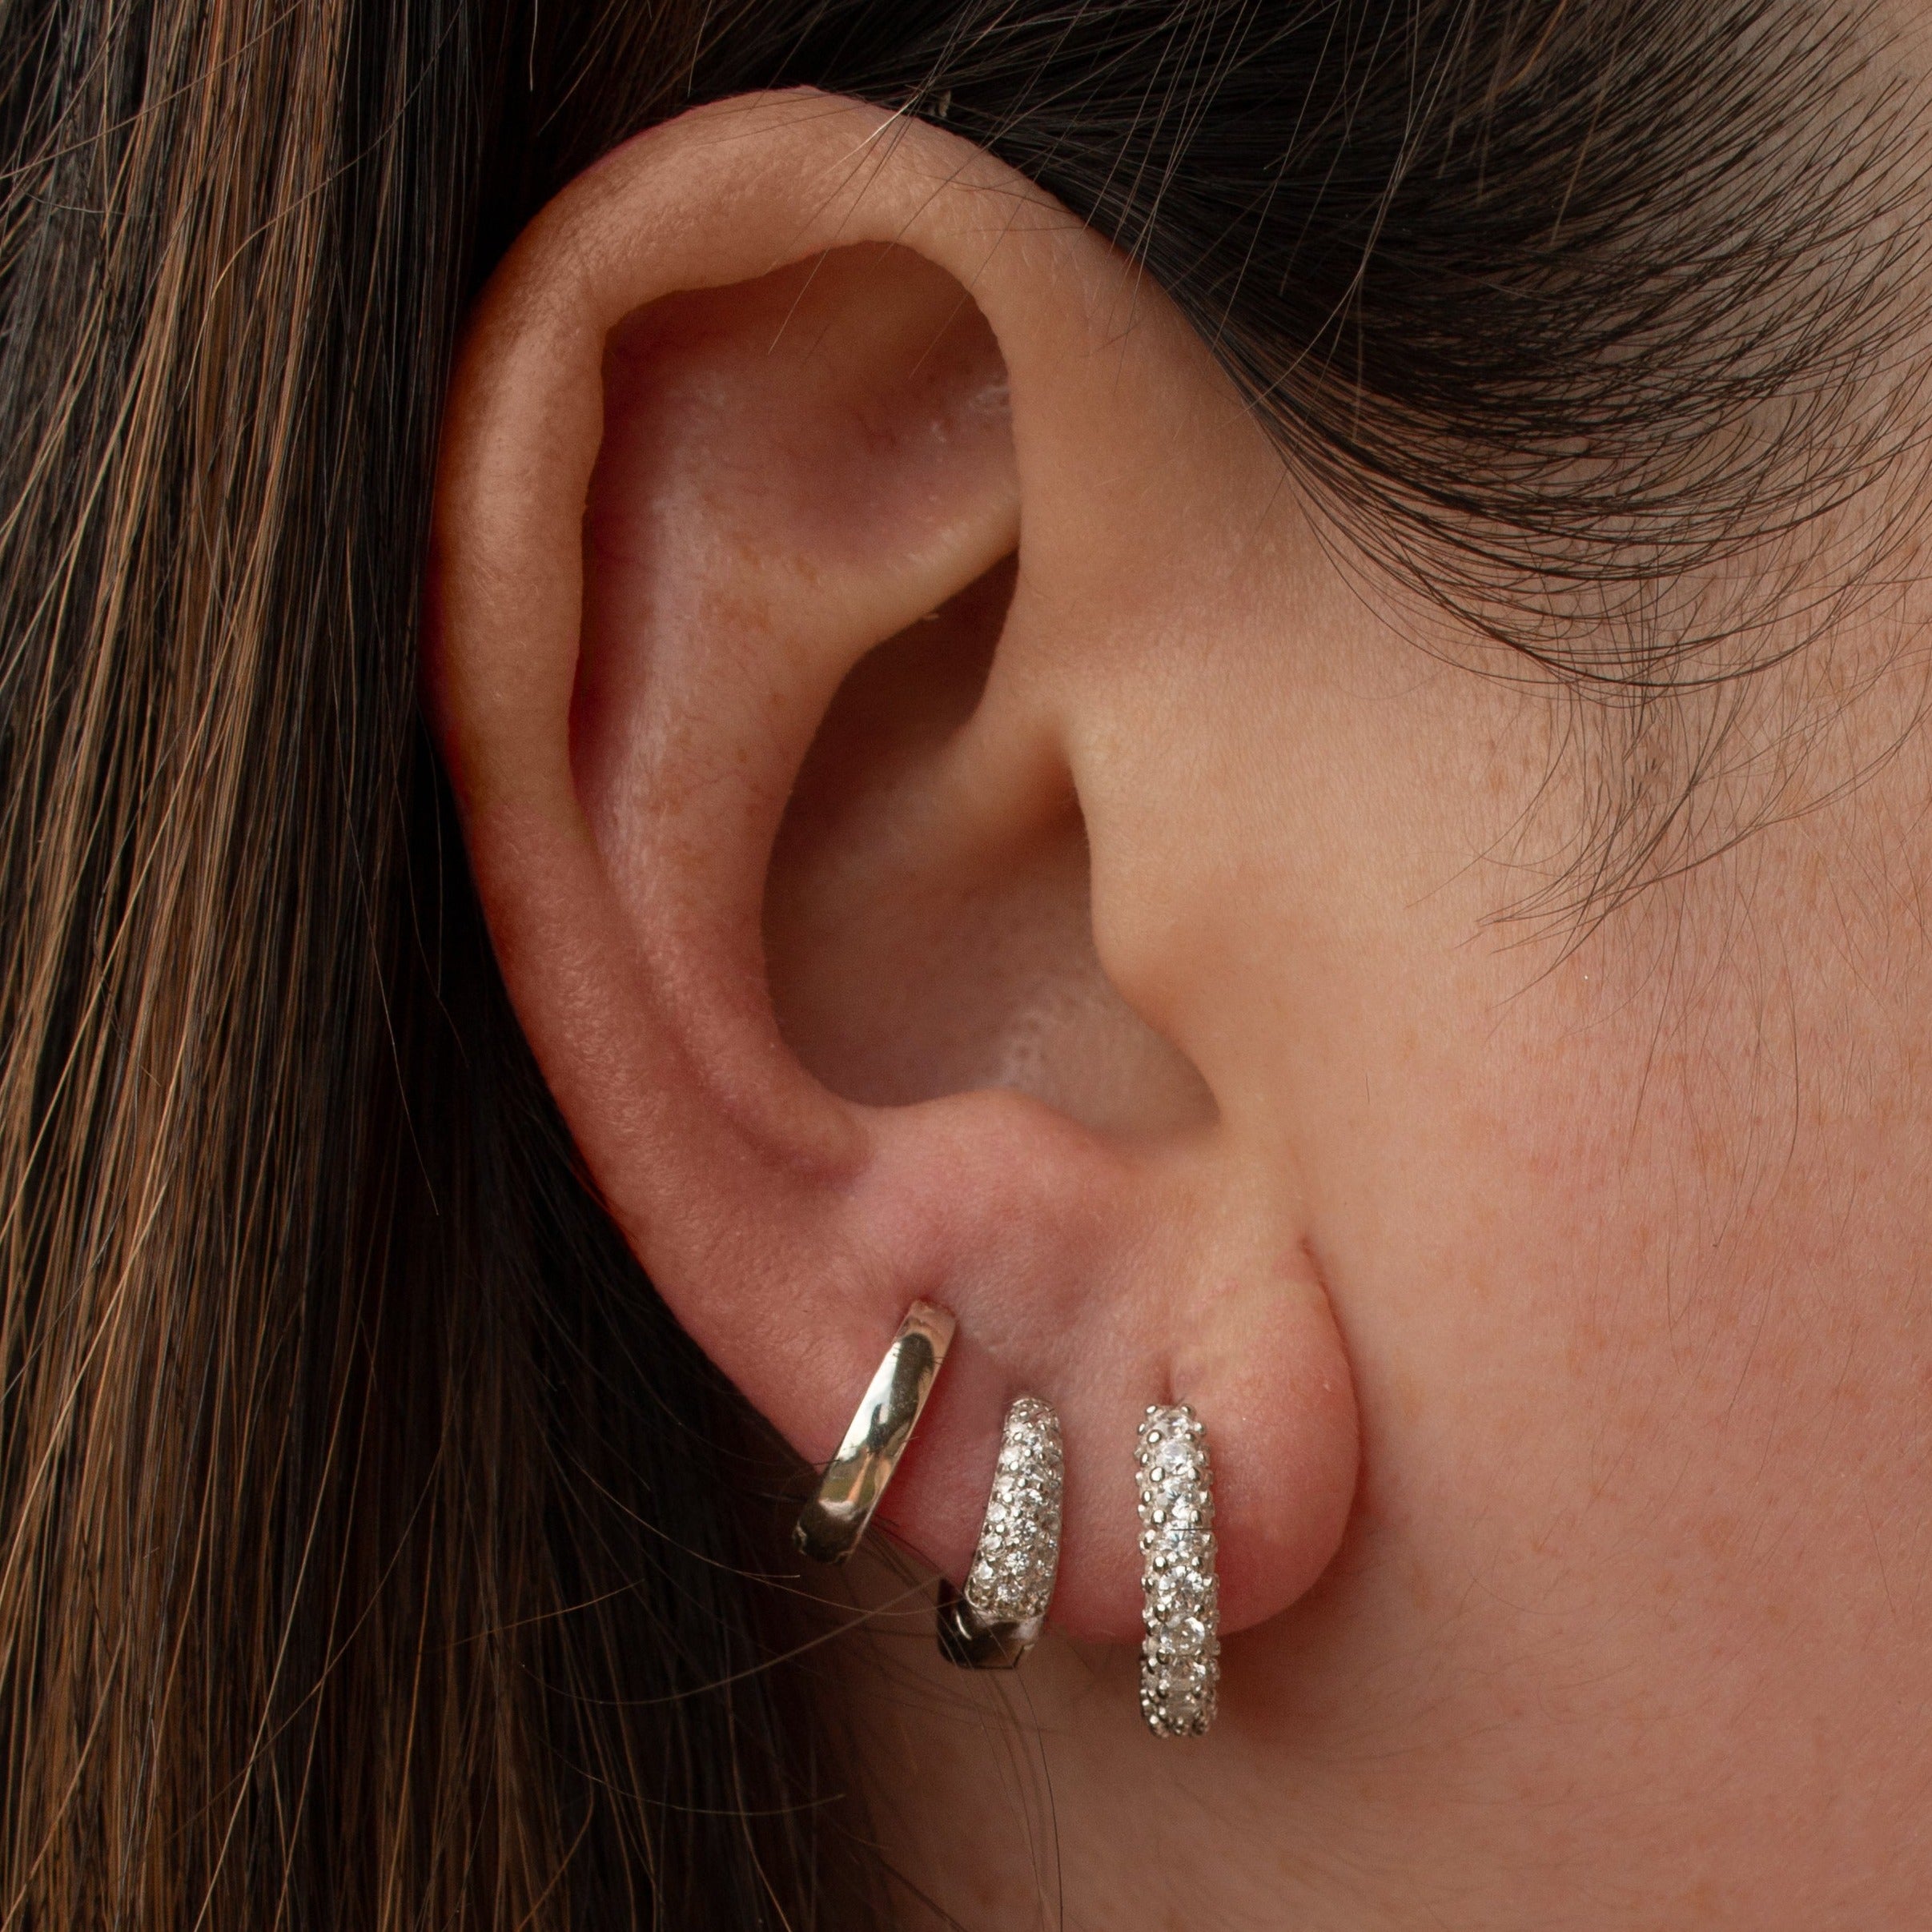 Avery earrings